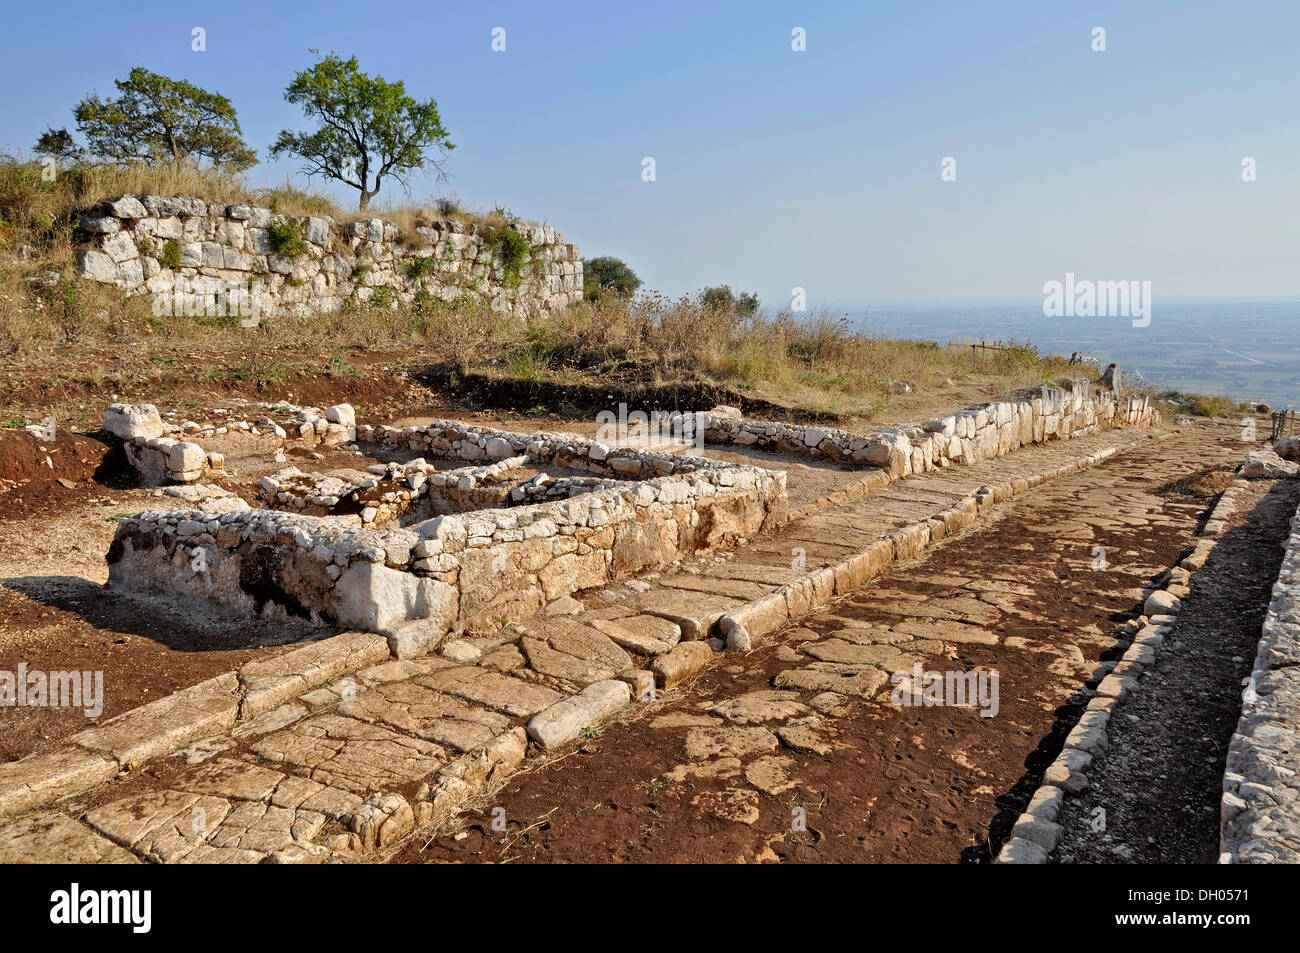 Strada di ciottoli con pavimentazione e i resti di un muro, sito archeologico della antica città romana di Norba, del IV secolo A.C. Foto Stock